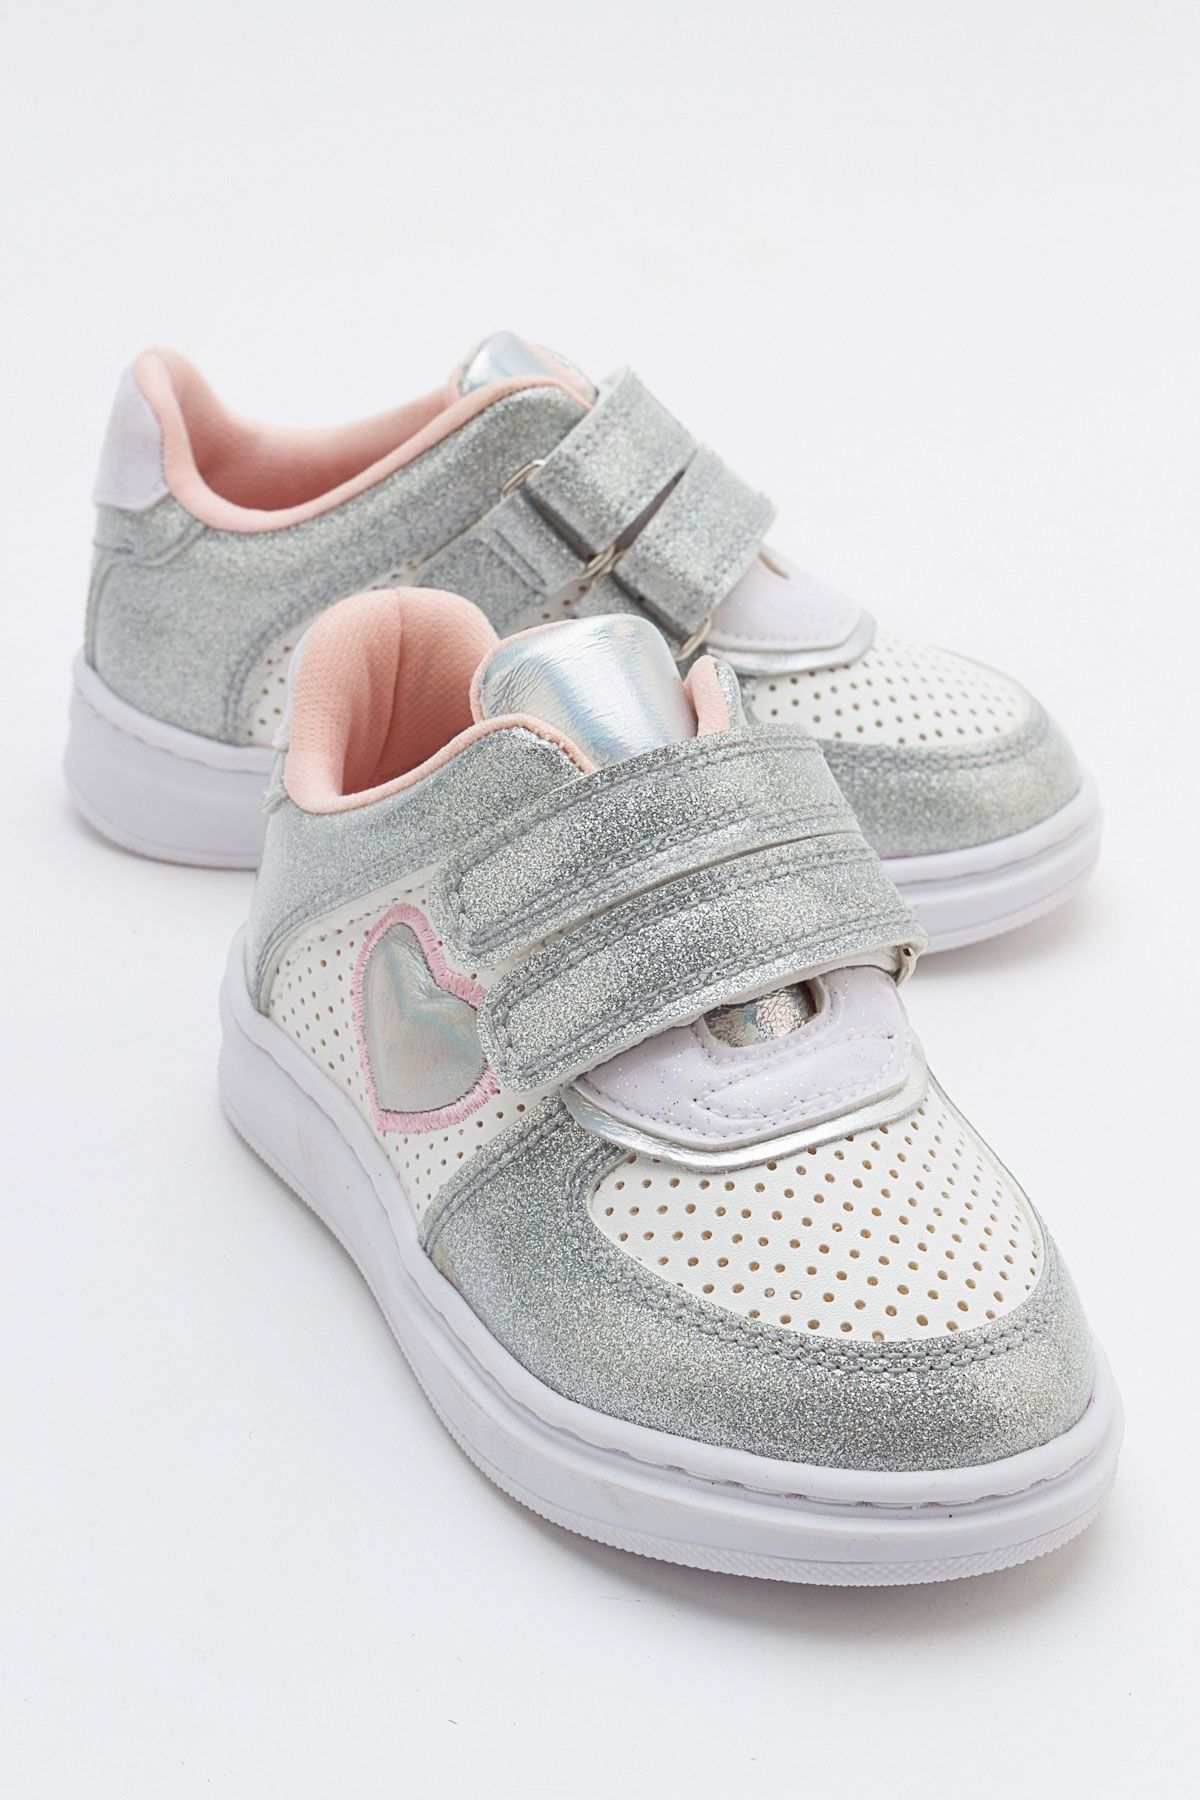 mnpc Kız Çocuk Gümüş Sneaker Ayakkabı